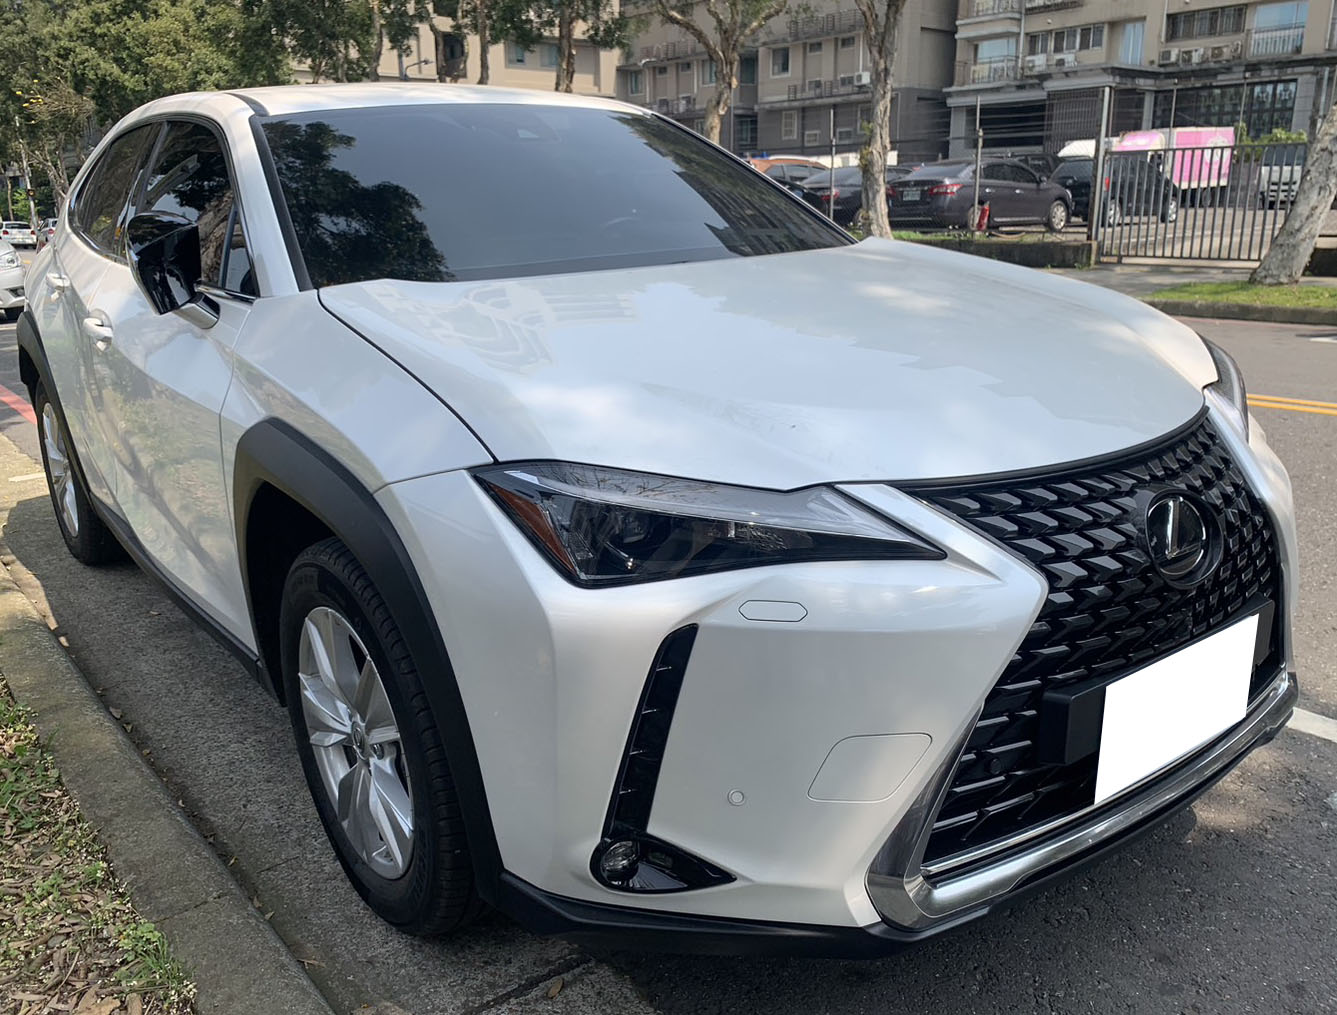 2019 Lexus 凌志 Ux